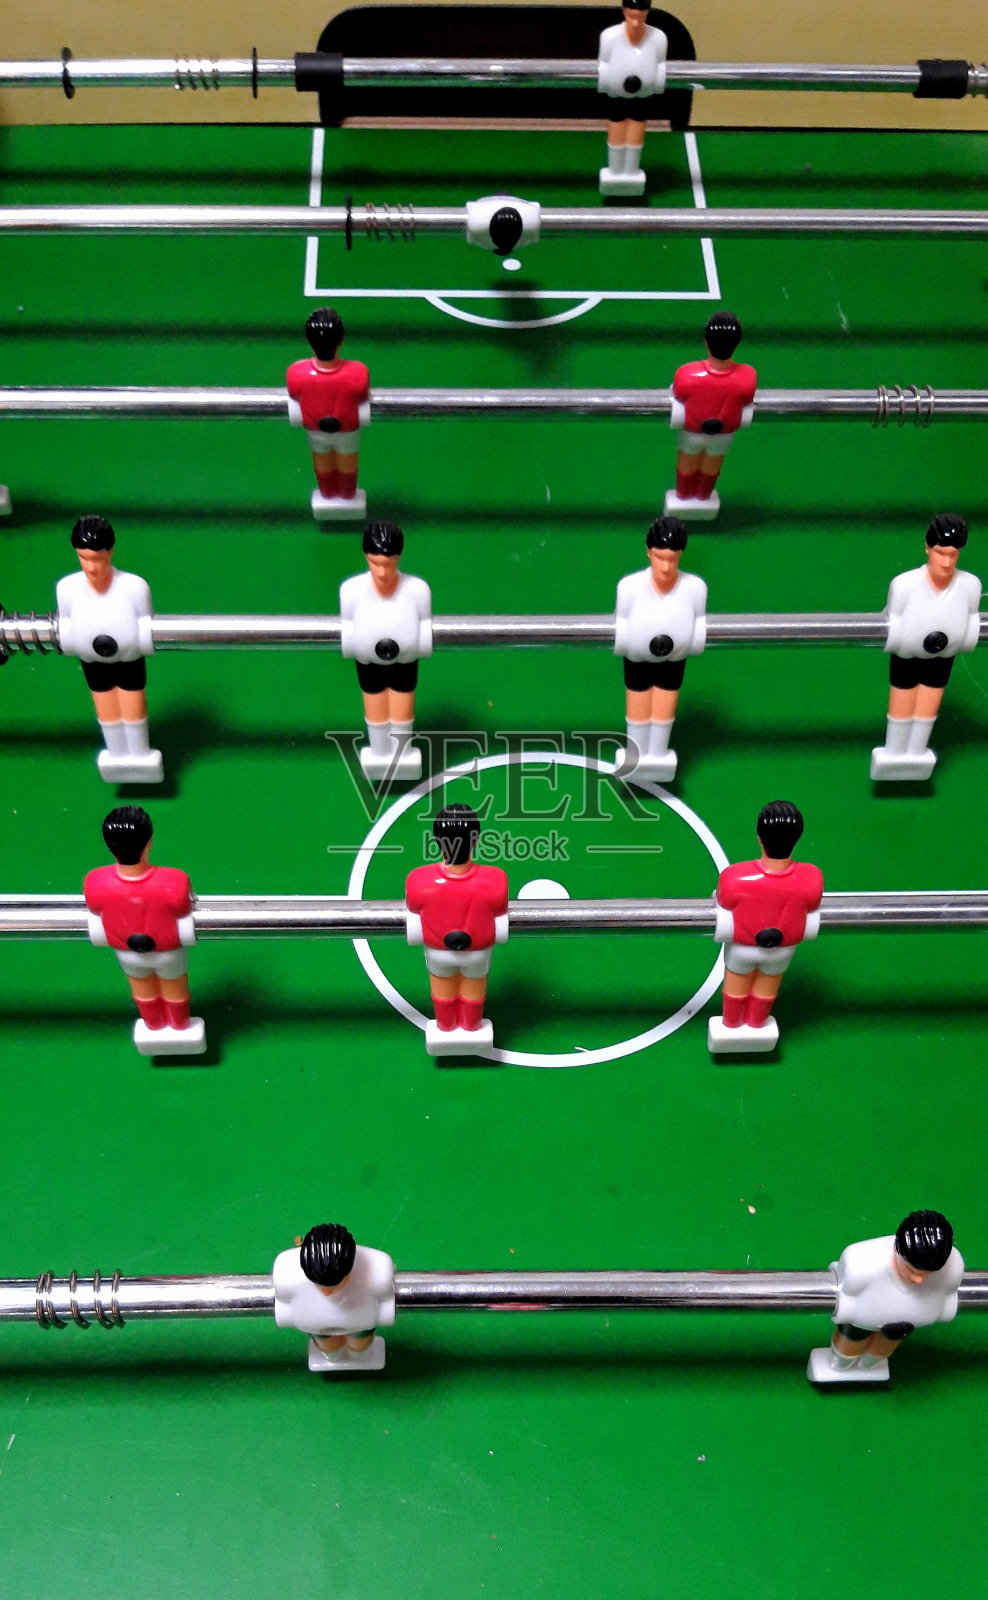 桌上足球红白塑料球员排成一排进行比赛照片摄影图片